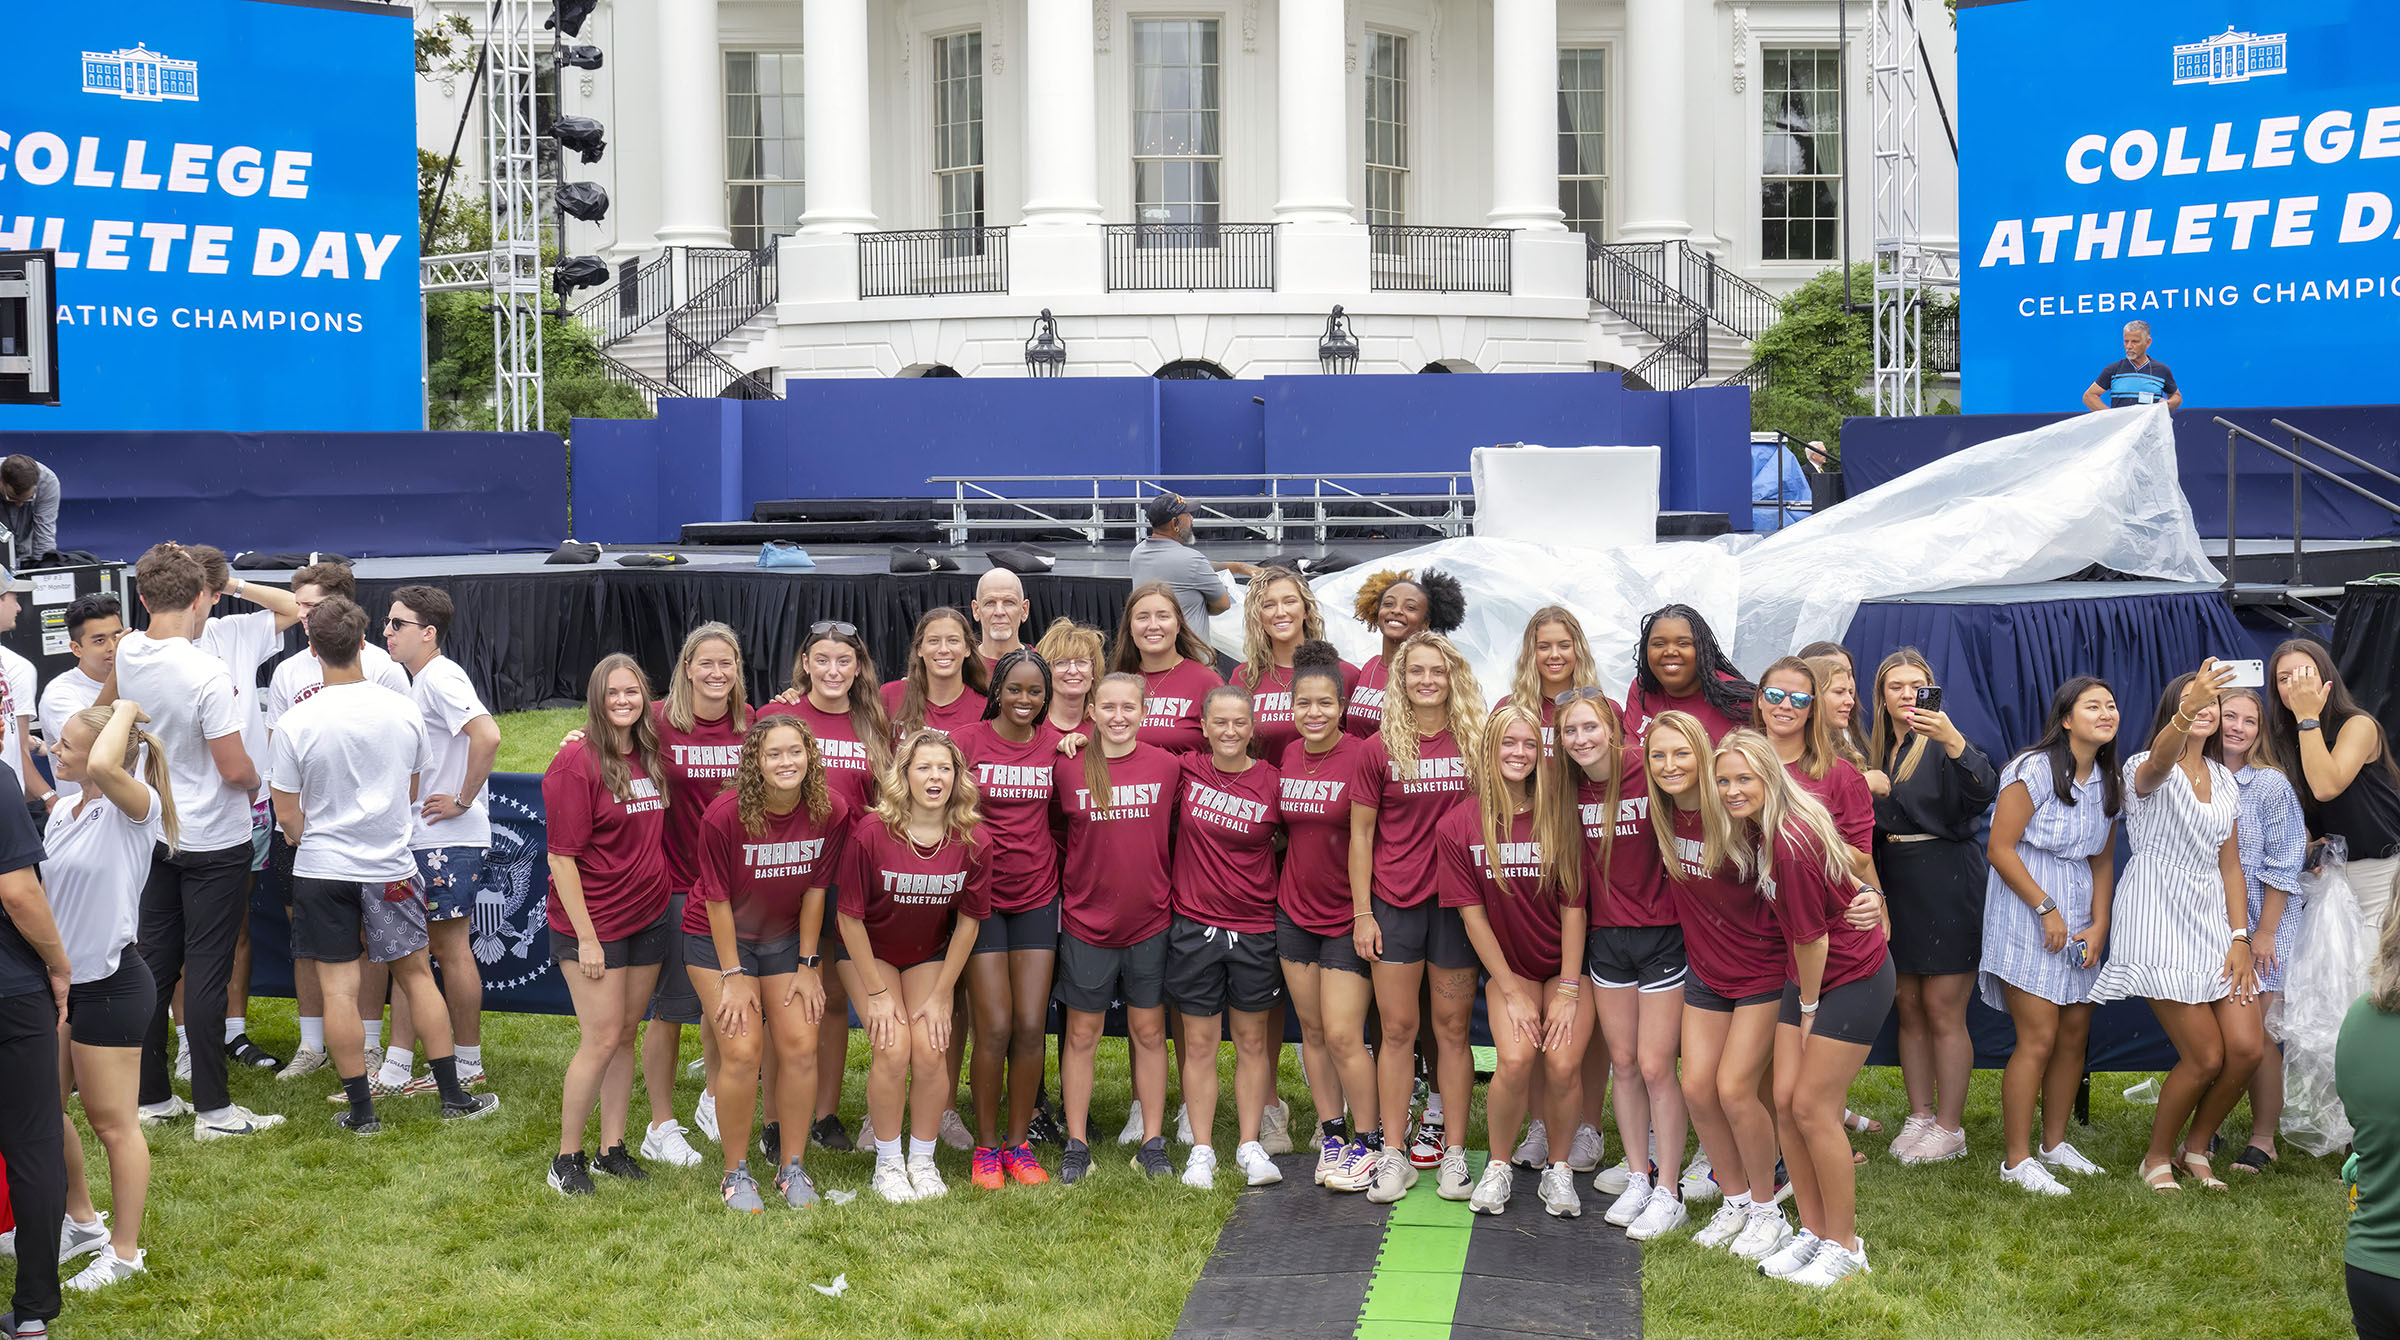 Transylvania women's basketball team at the White House.